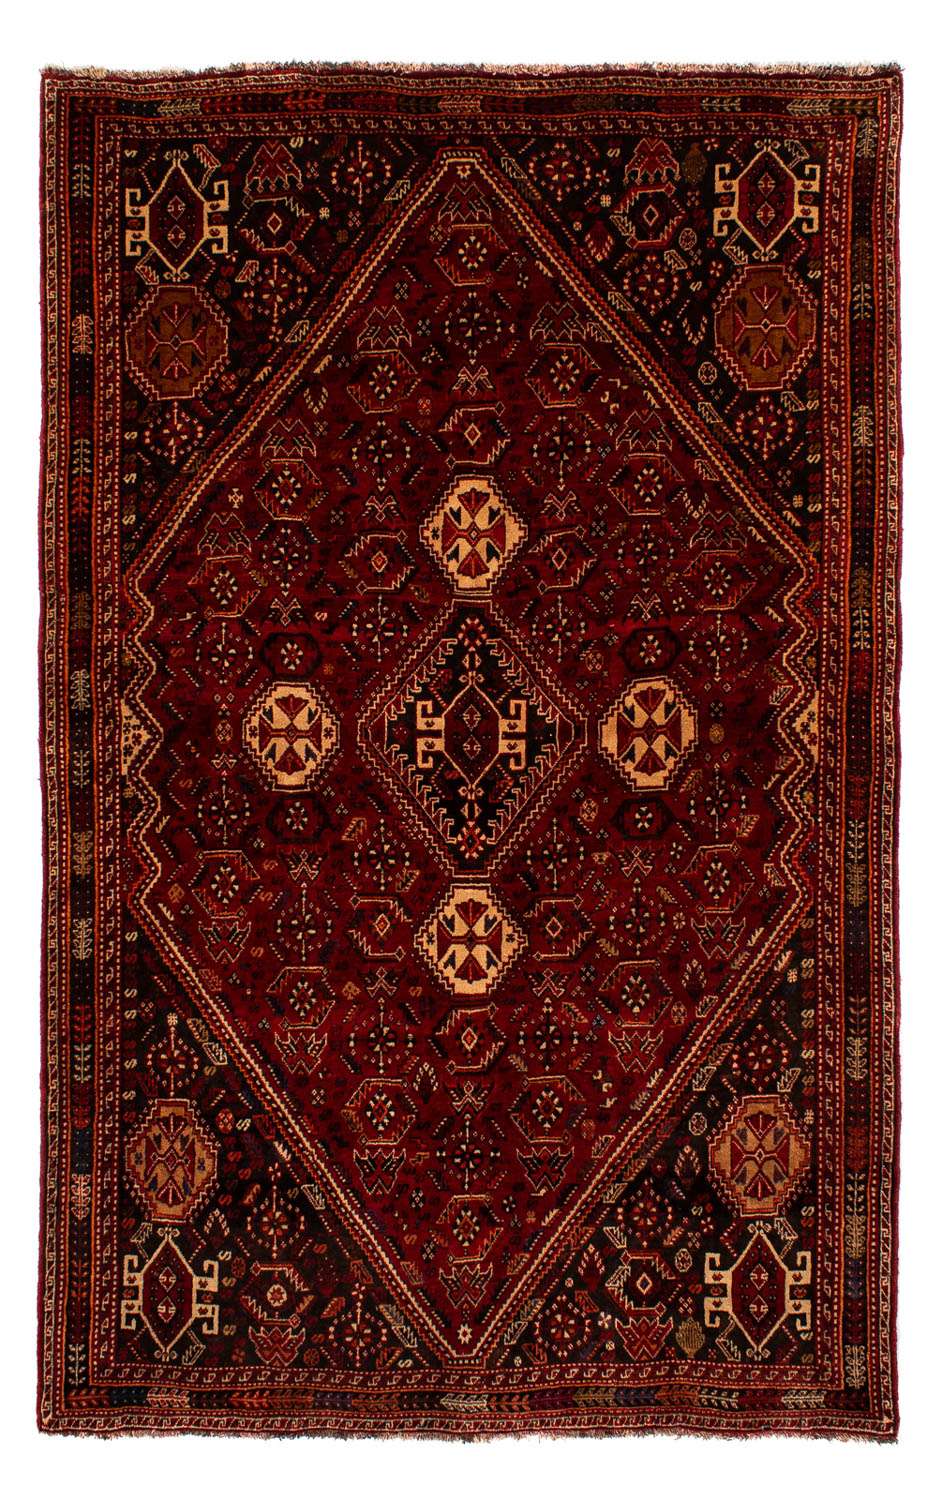 Persisk teppe - Nomadisk - 275 x 182 cm - mørk rød